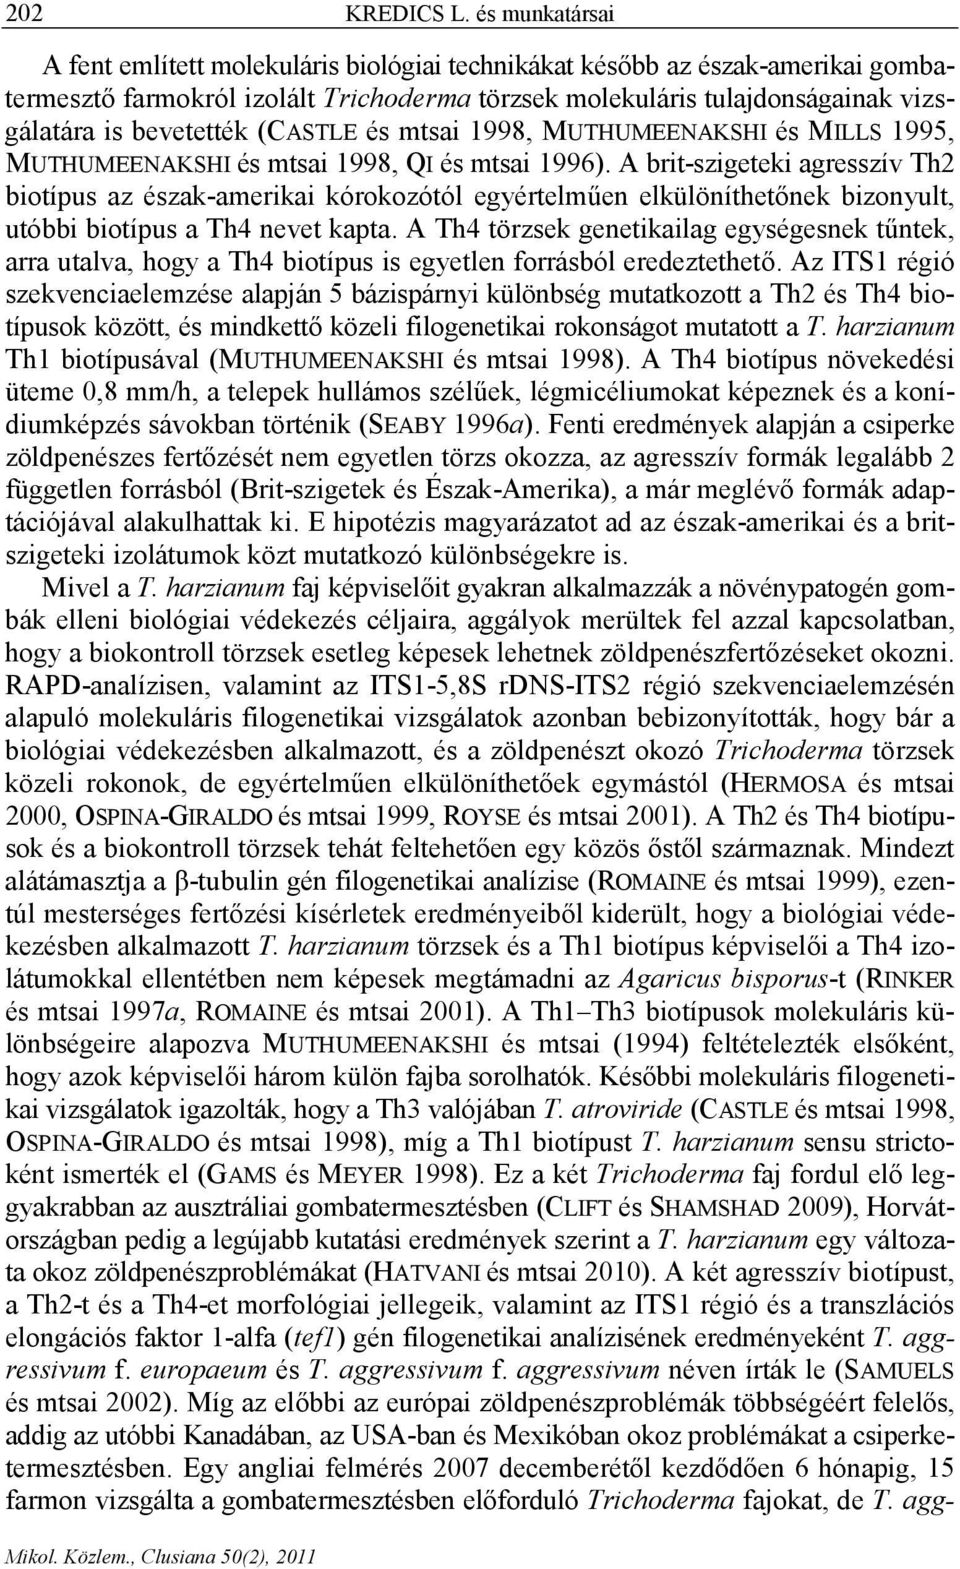 (CASTLE és mtsai 1998, MUTHUMEENAKSHI és MILLS 1995, MUTHUMEENAKSHI és mtsai 1998, QI és mtsai 1996).